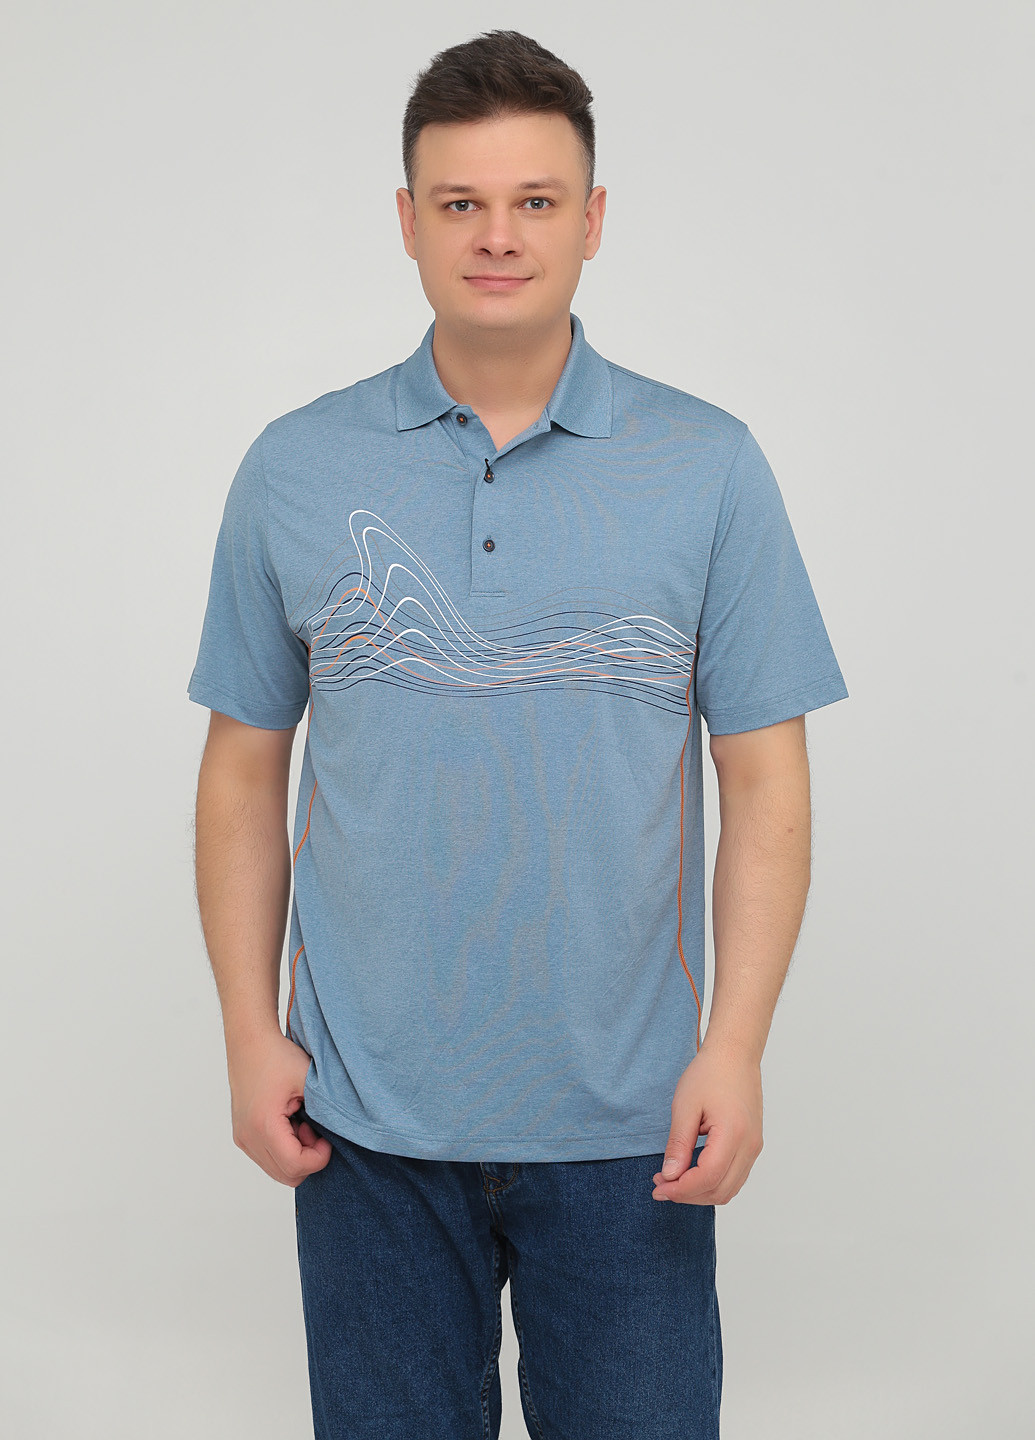 Темно-голубой футболка-поло для мужчин Greg Norman с абстрактным узором